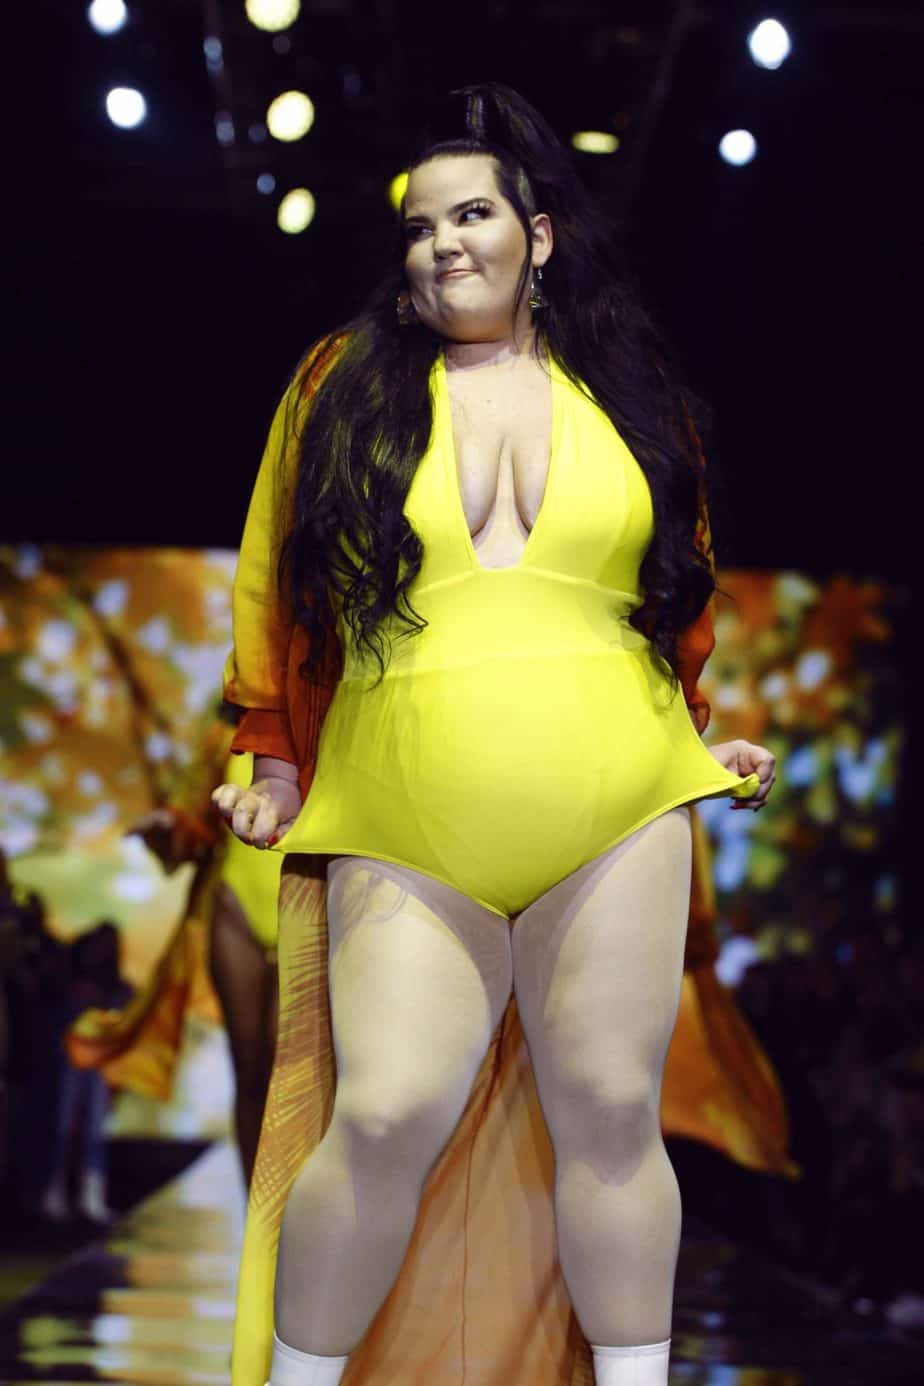 נטע ברזילי בבגד ים שלם צהוב. תצוגת בננהוט, שבוע האופנה תל אביב 2019. צילום: עומר רביבי